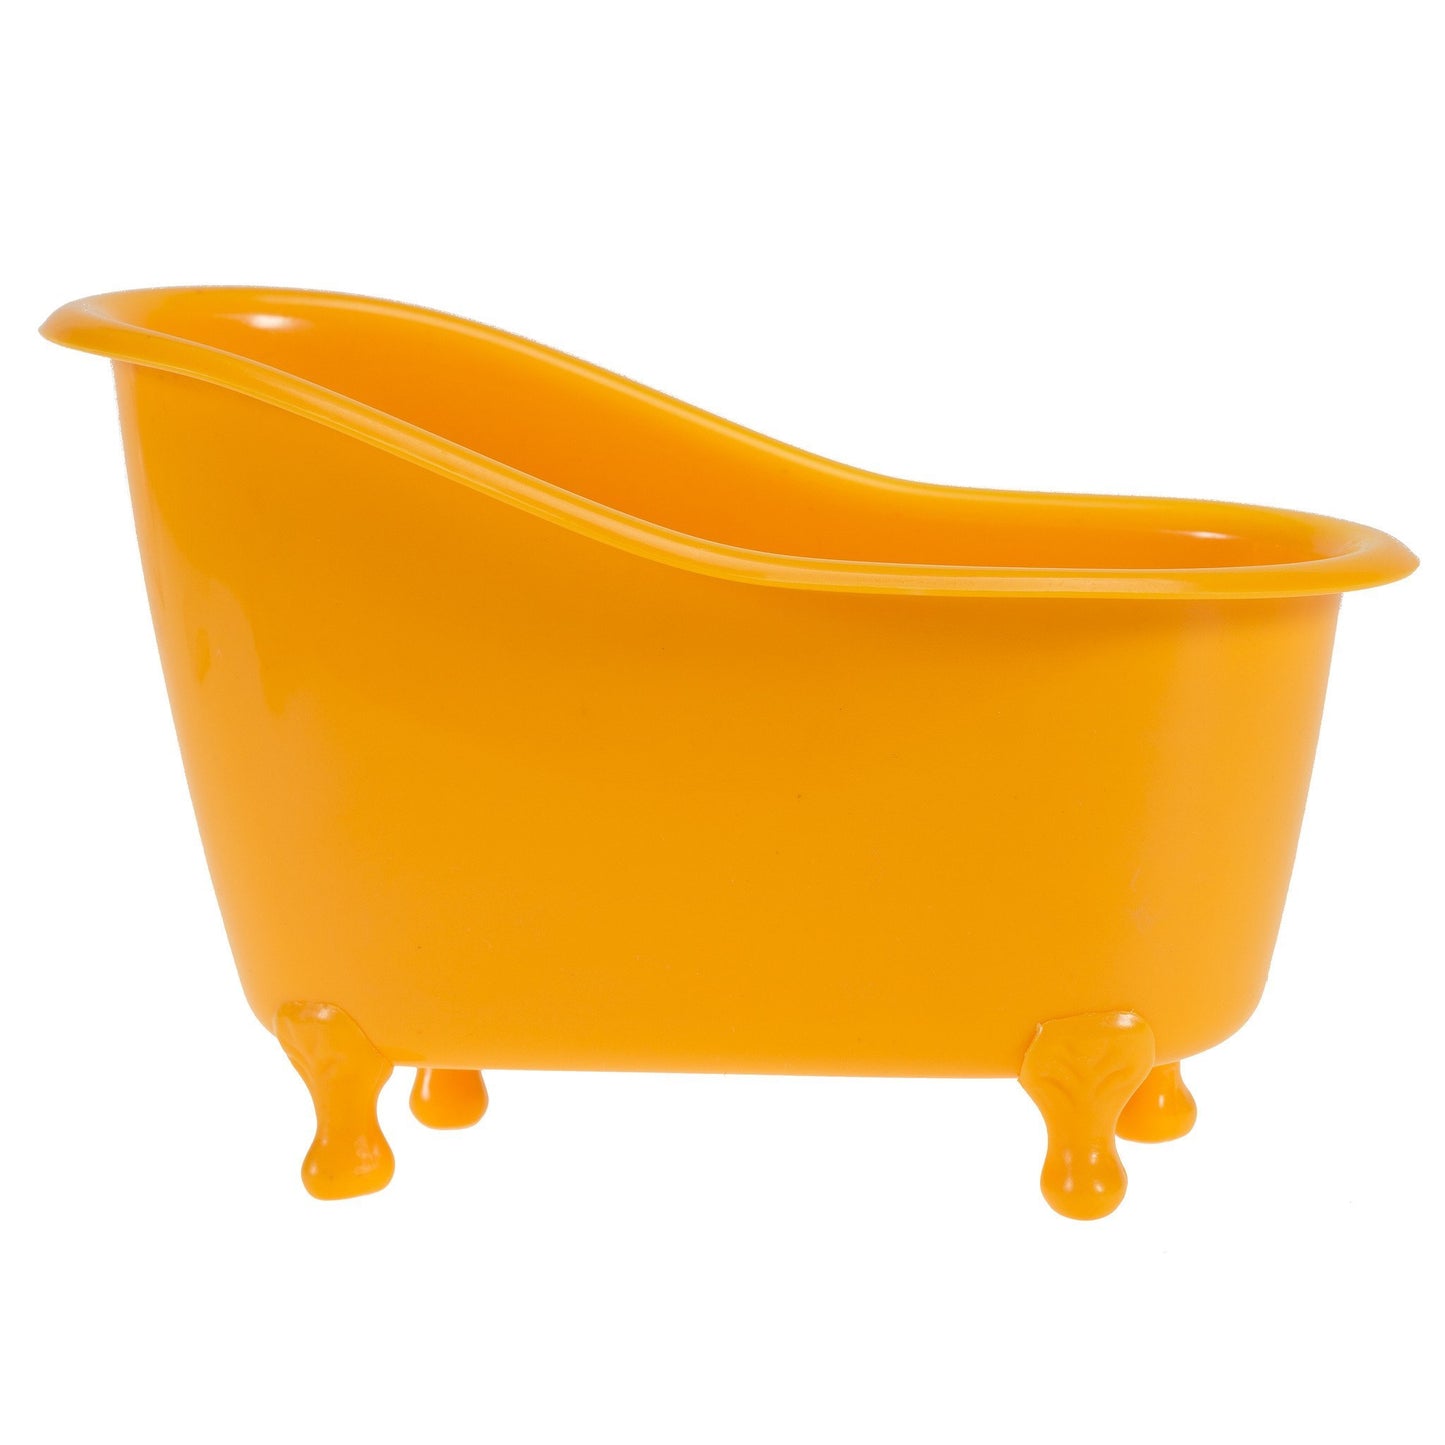 Mango Pears Tub Spa Bath Set: Shower Gel, Bubble Bath, Body Lotion, Bath Salt, & Puff